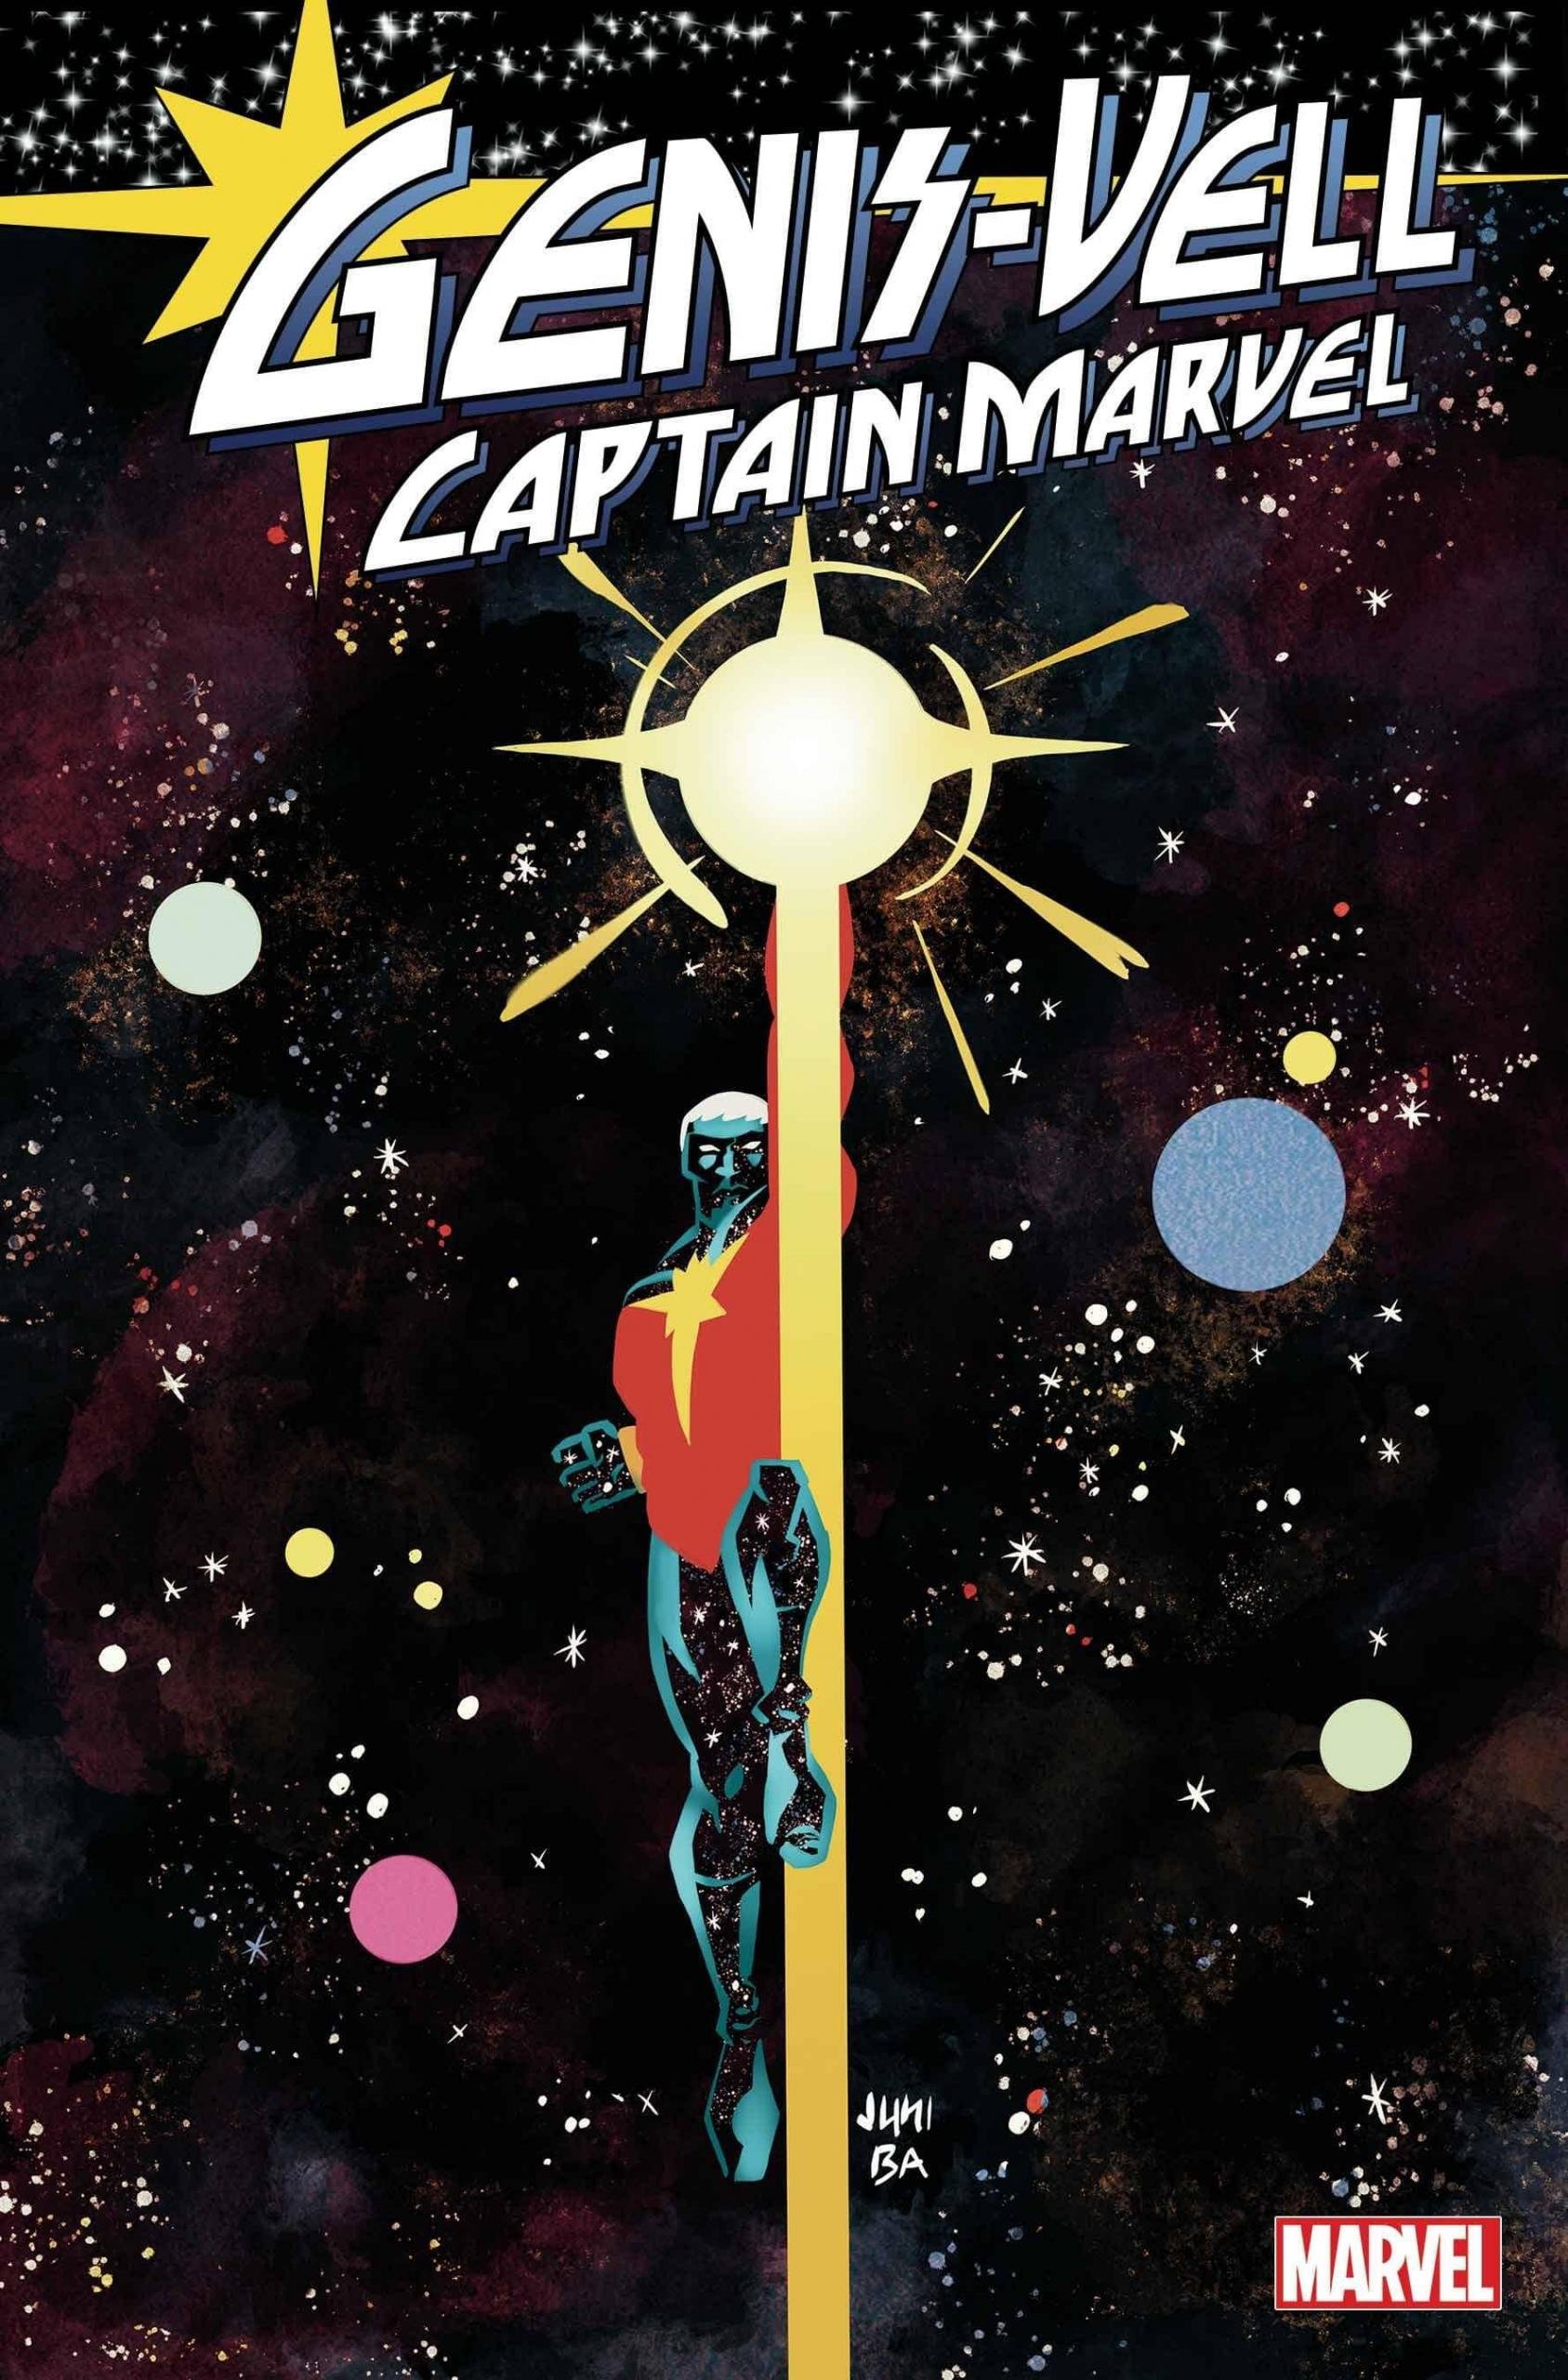 Variant Cover di Genis-Vell: Captain Marvel 1 di Juni Ba, il ritorno di Peter David sul personaggio